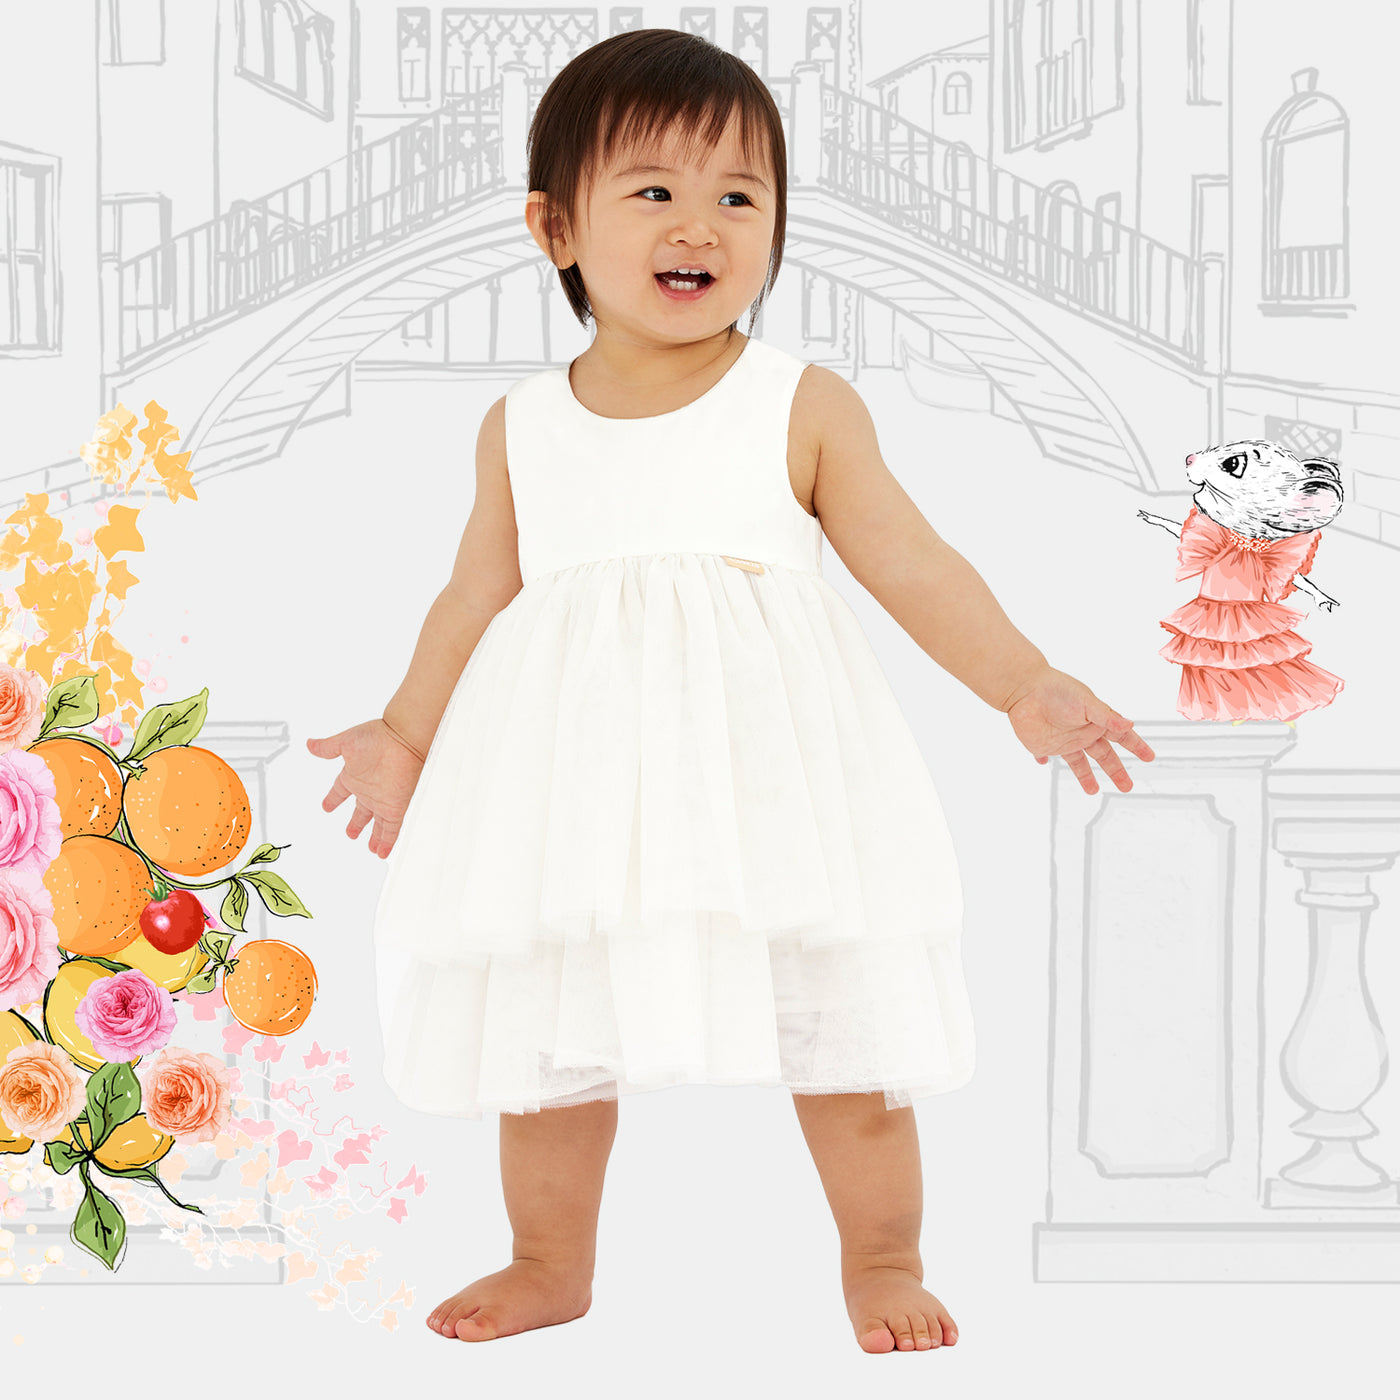 Tuscan Dress Baby - Blanc